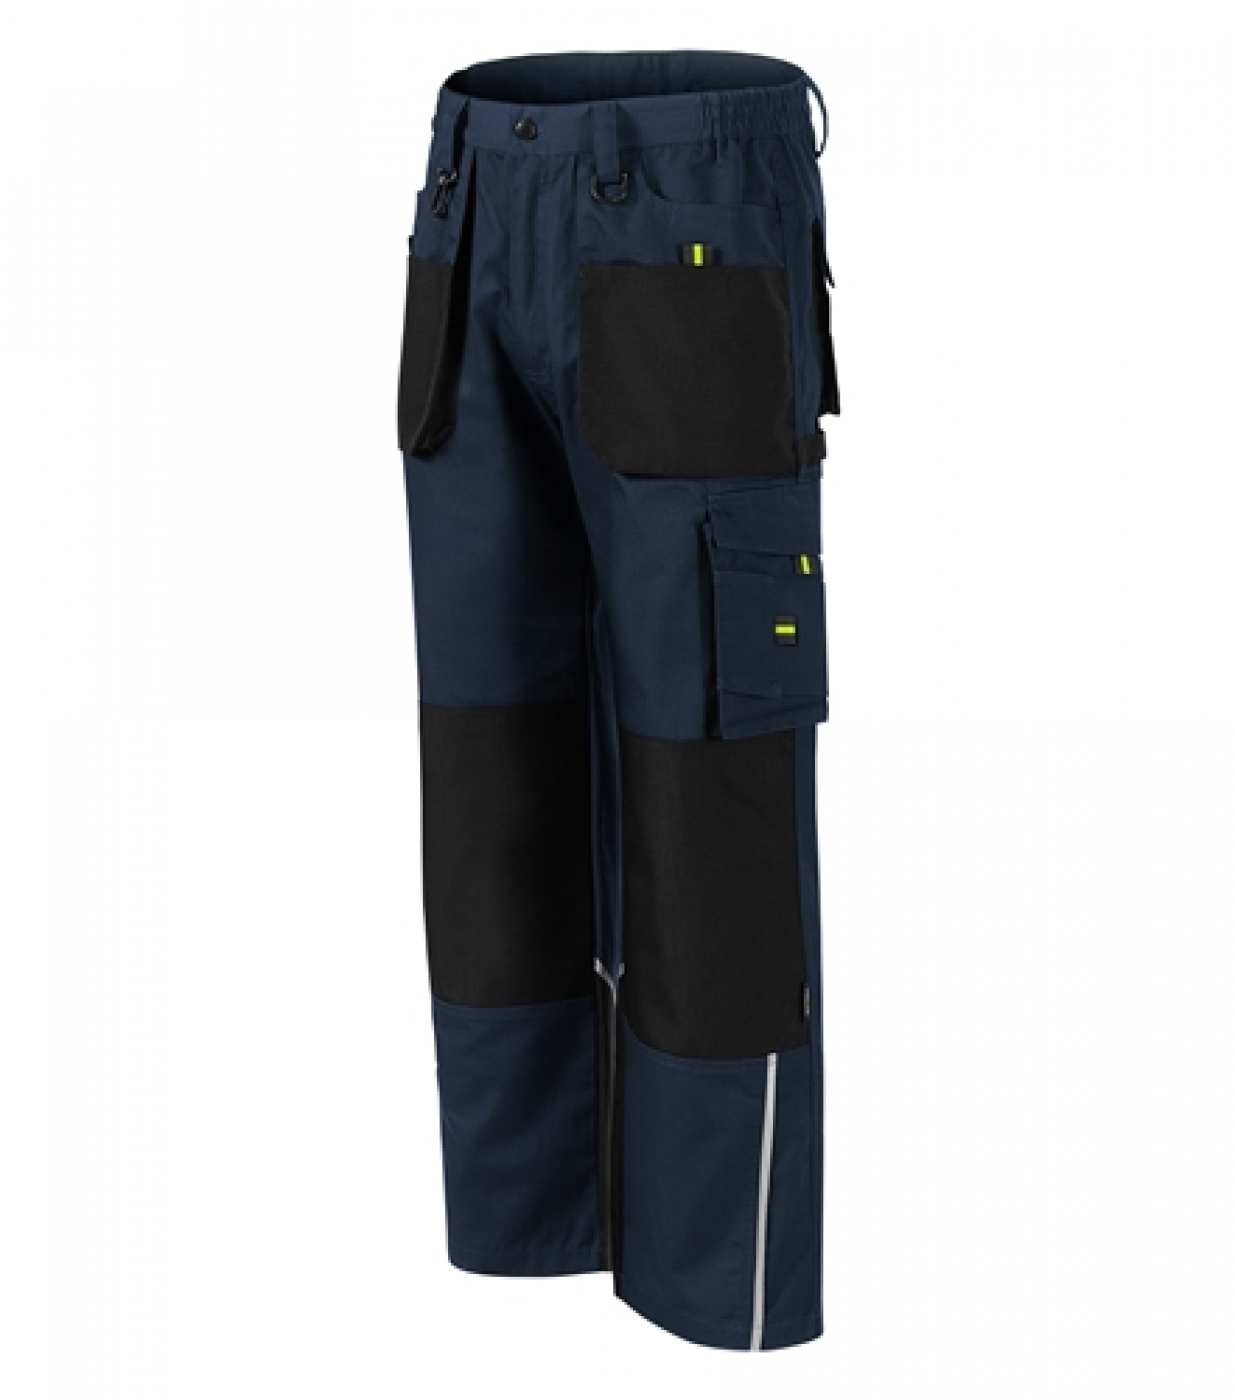 Uniforme Protectie â€“ Pantaloni lucru barbati, cu buzunare, material CORDURA